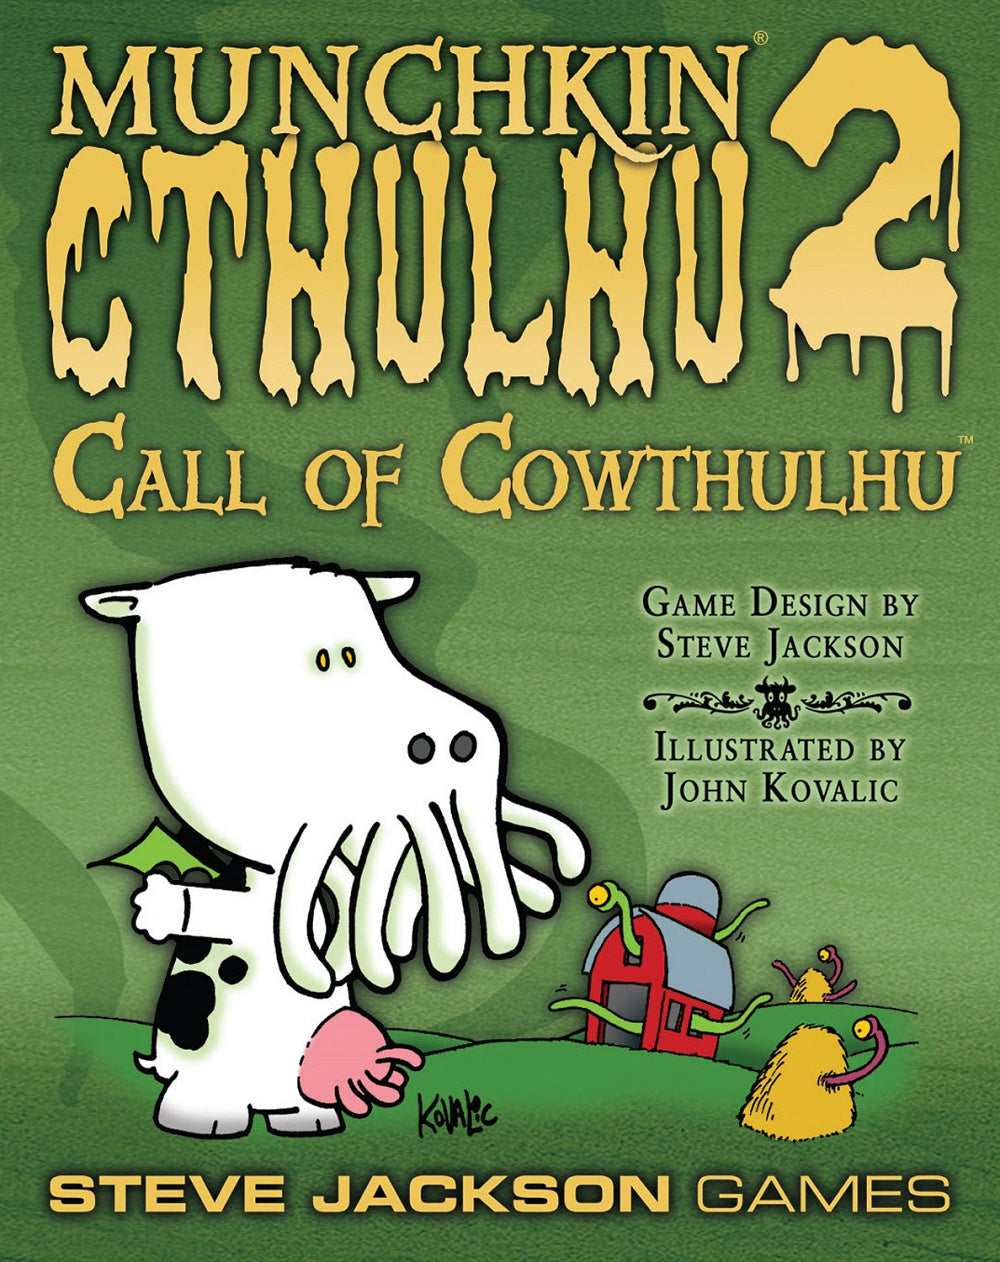 Munchkin: Cthulhu 2 Call of Cowthulhu